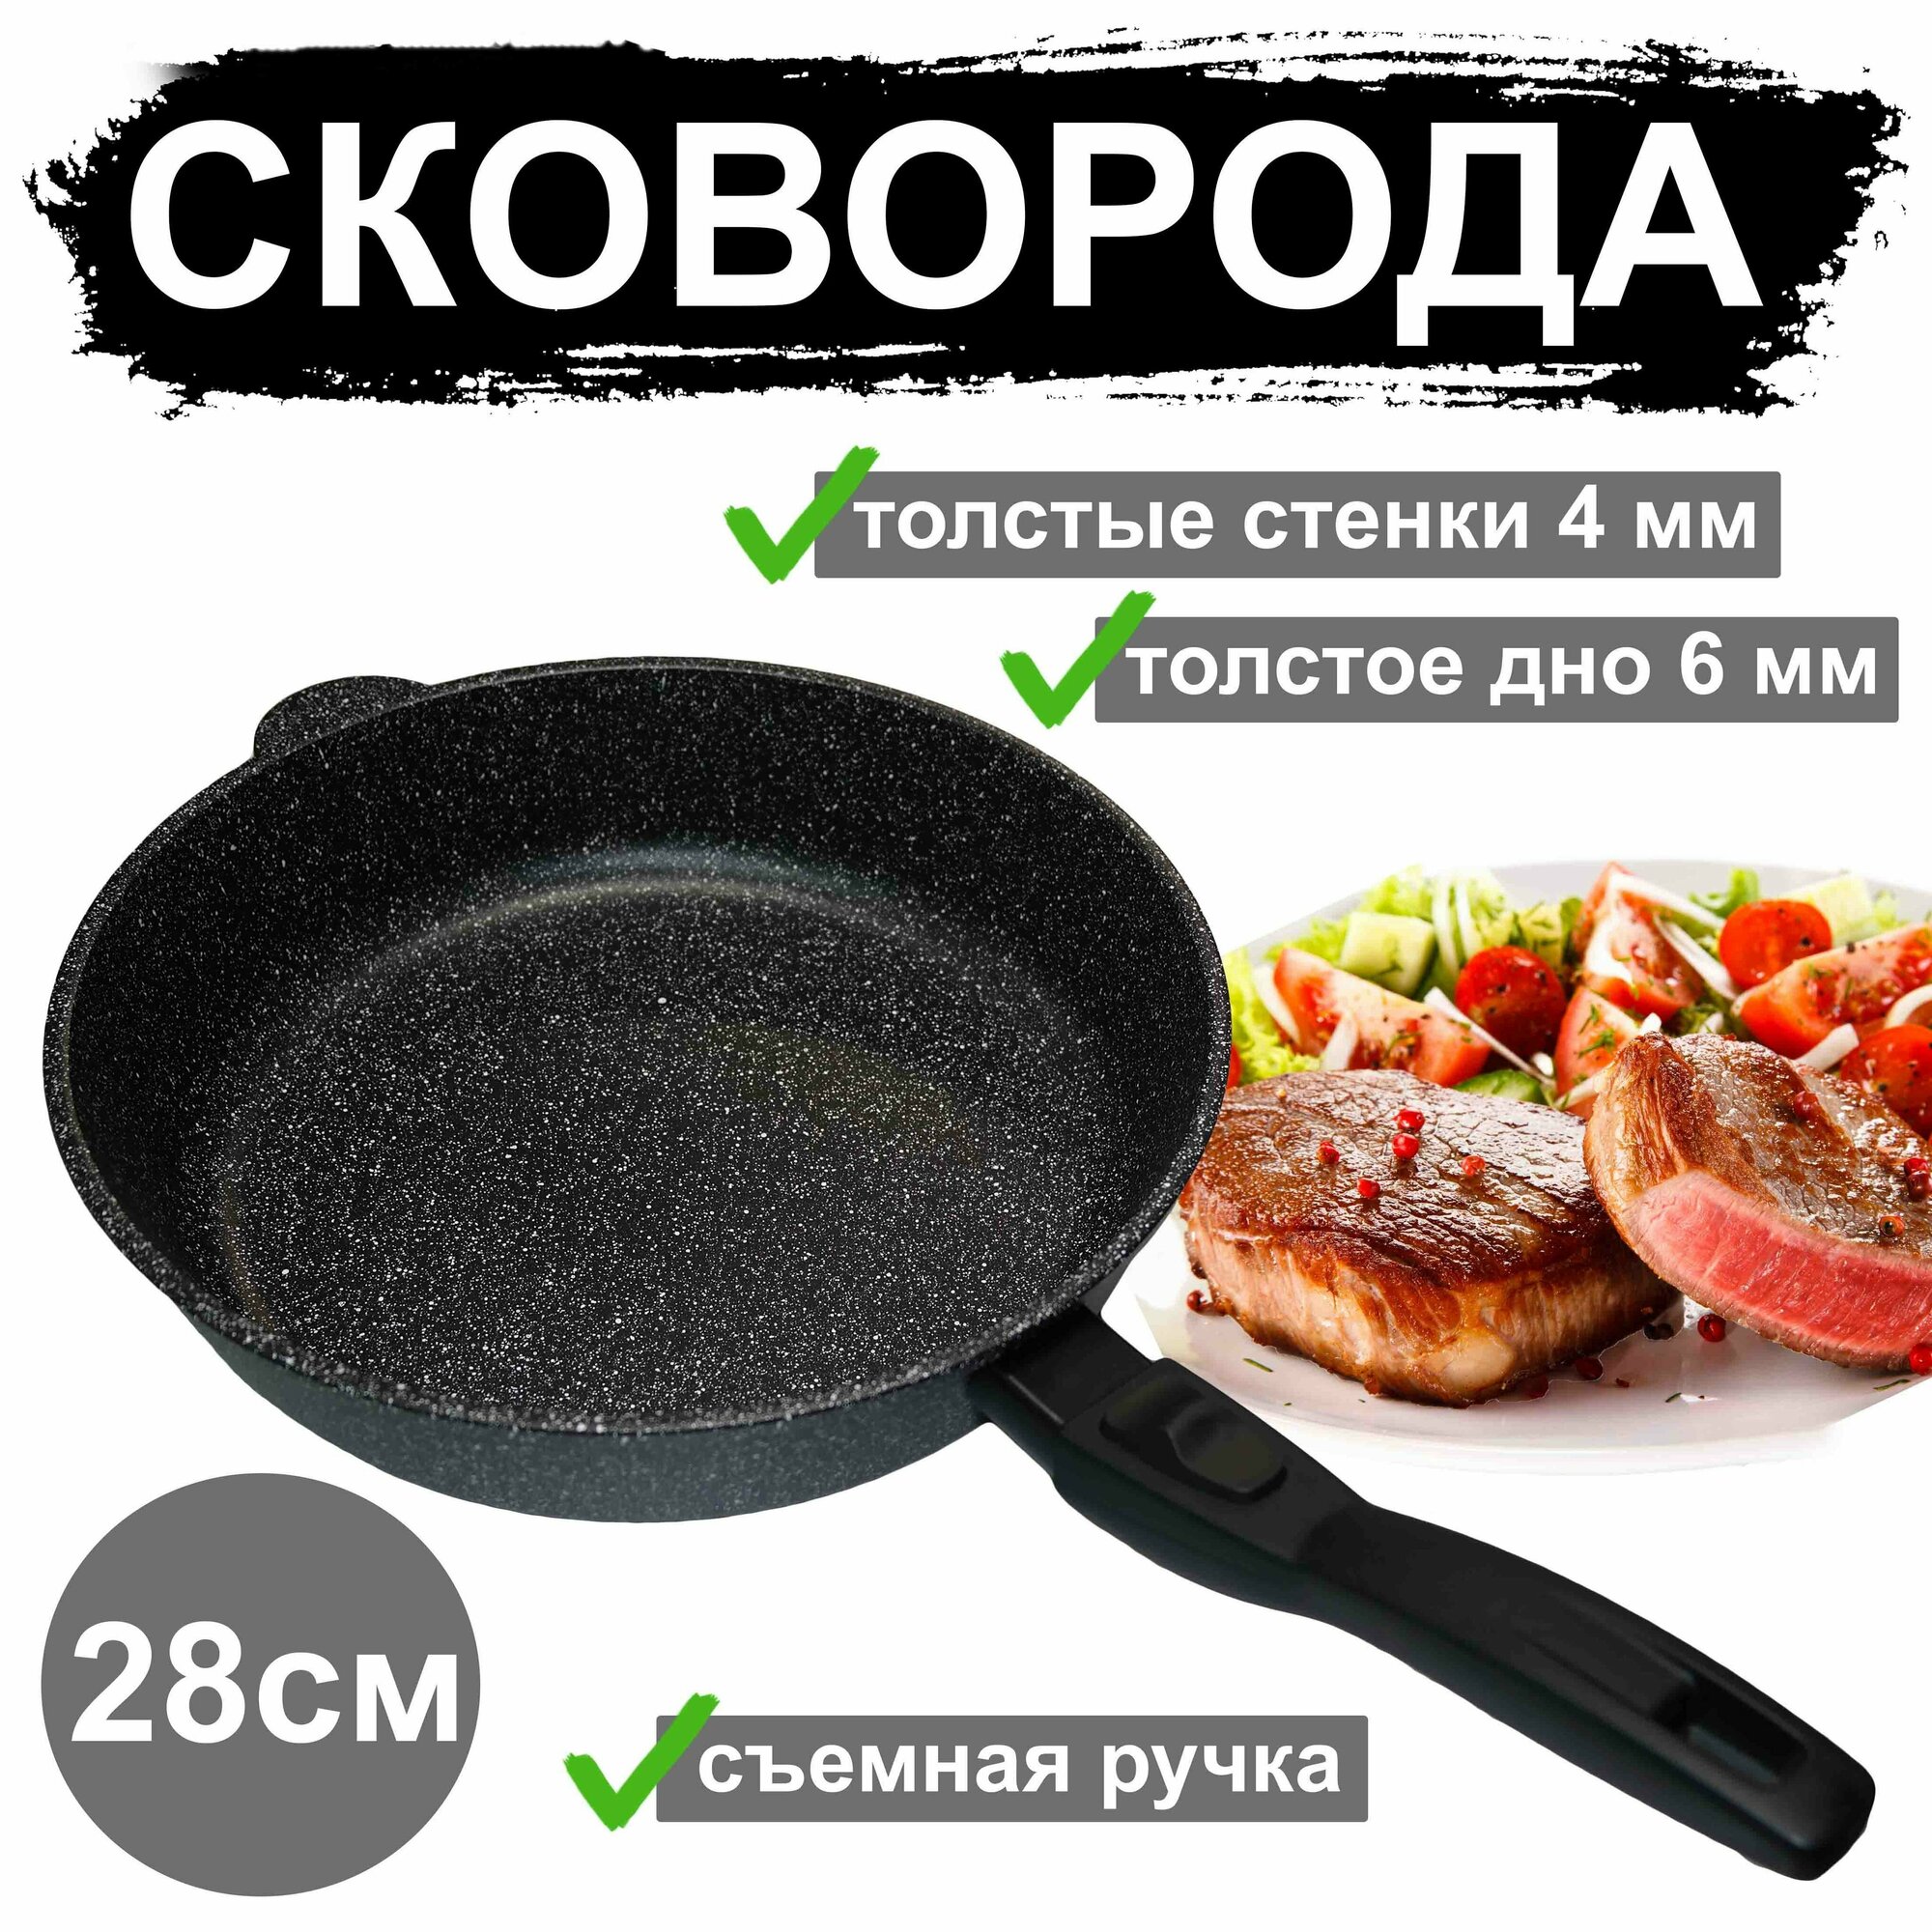 Сковорода ярославская сковородка универсальная